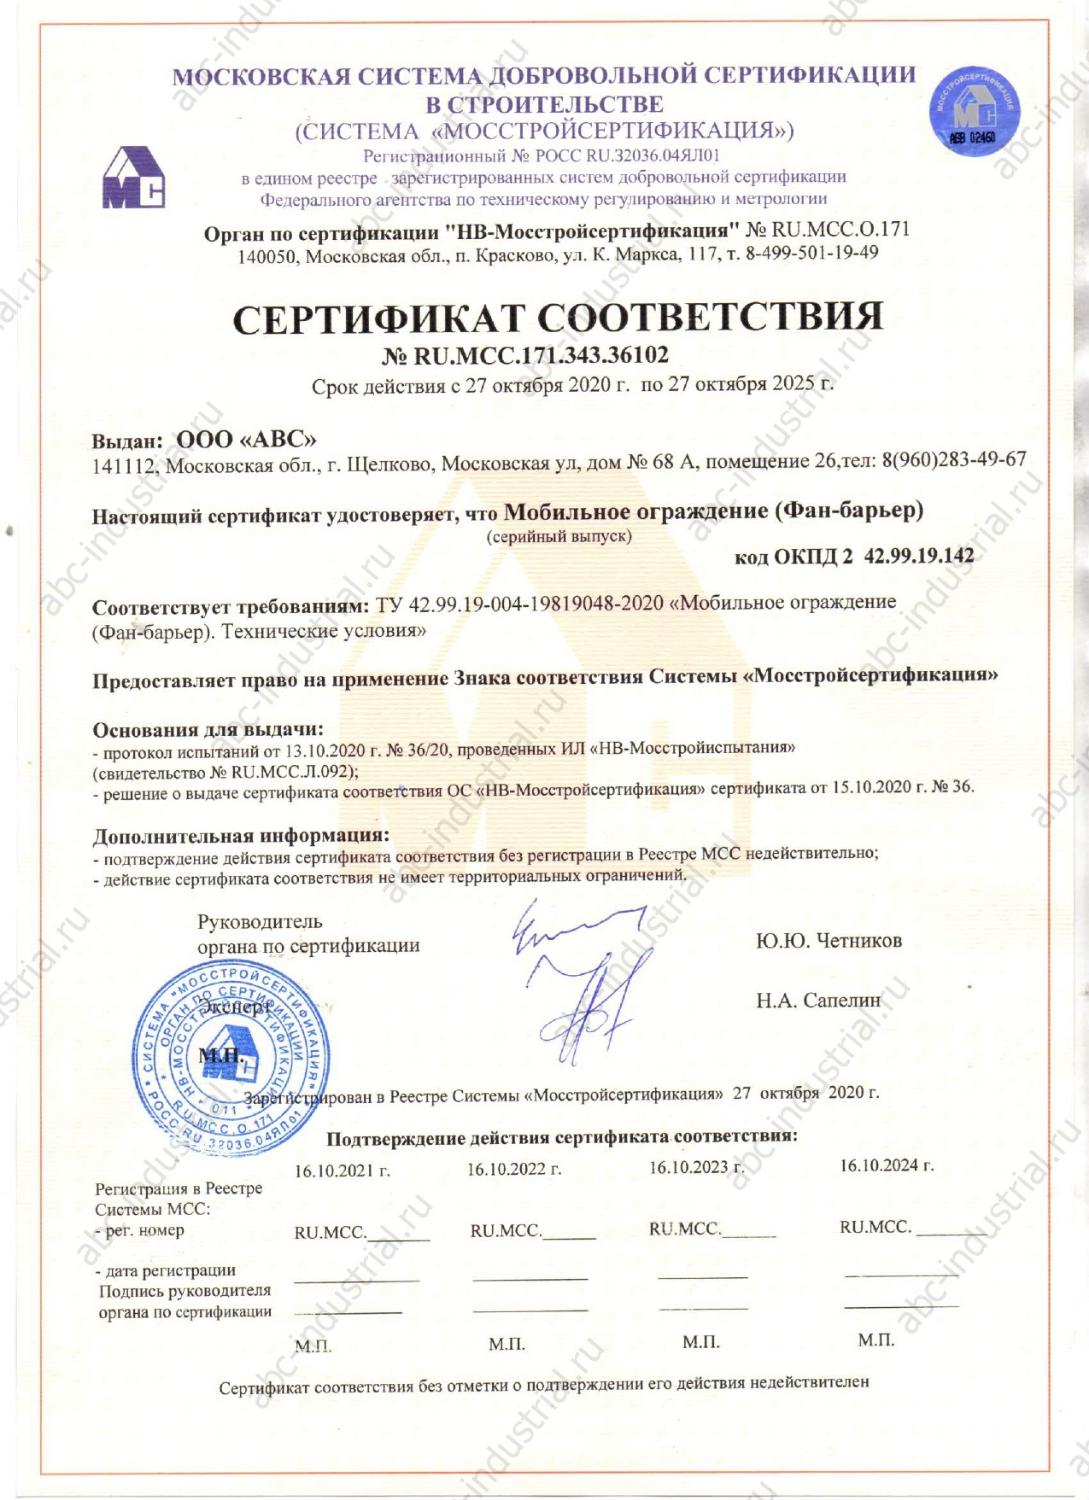 Сертификат соответствия на мобильное ограждение (фан-барьер)